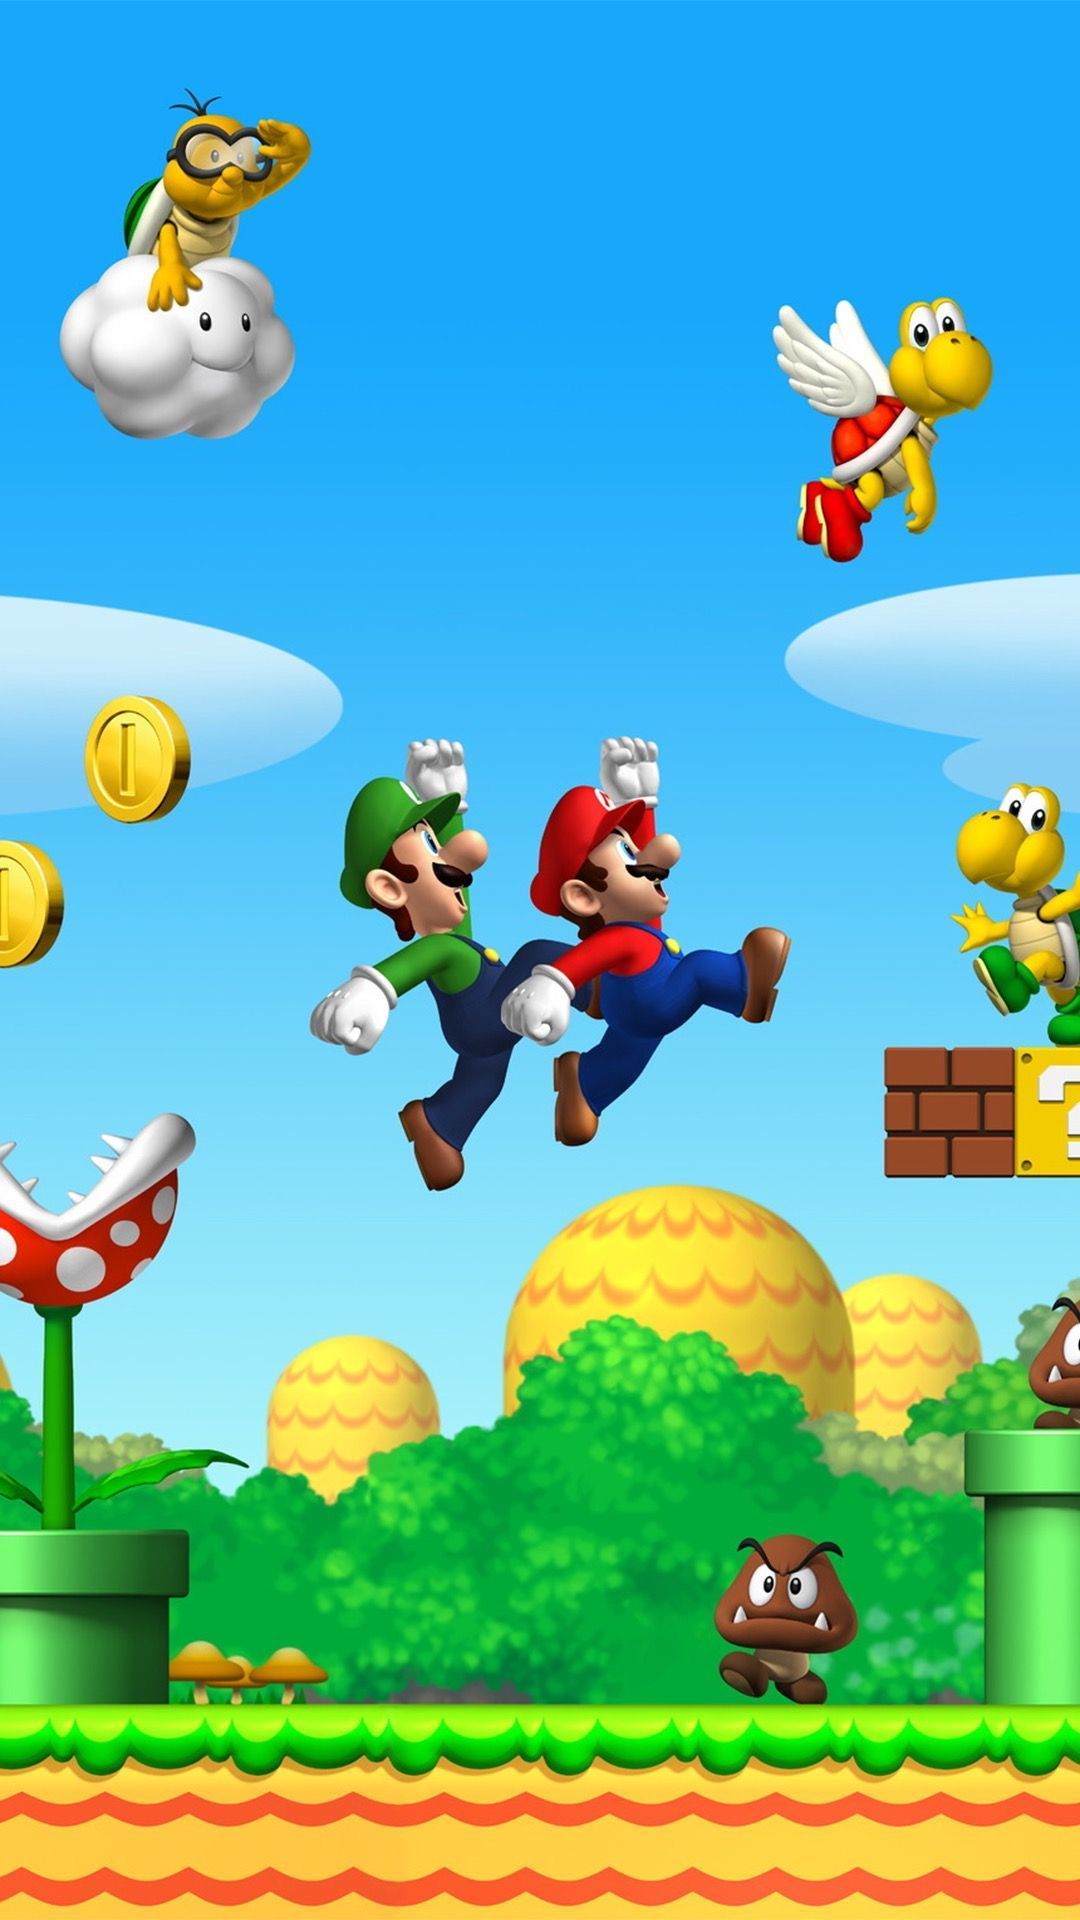 Bit Mario iPhone Background #Bit #Mario #iPhone #Background #wallpaper. Super mario art, Mario, Mario and luigi